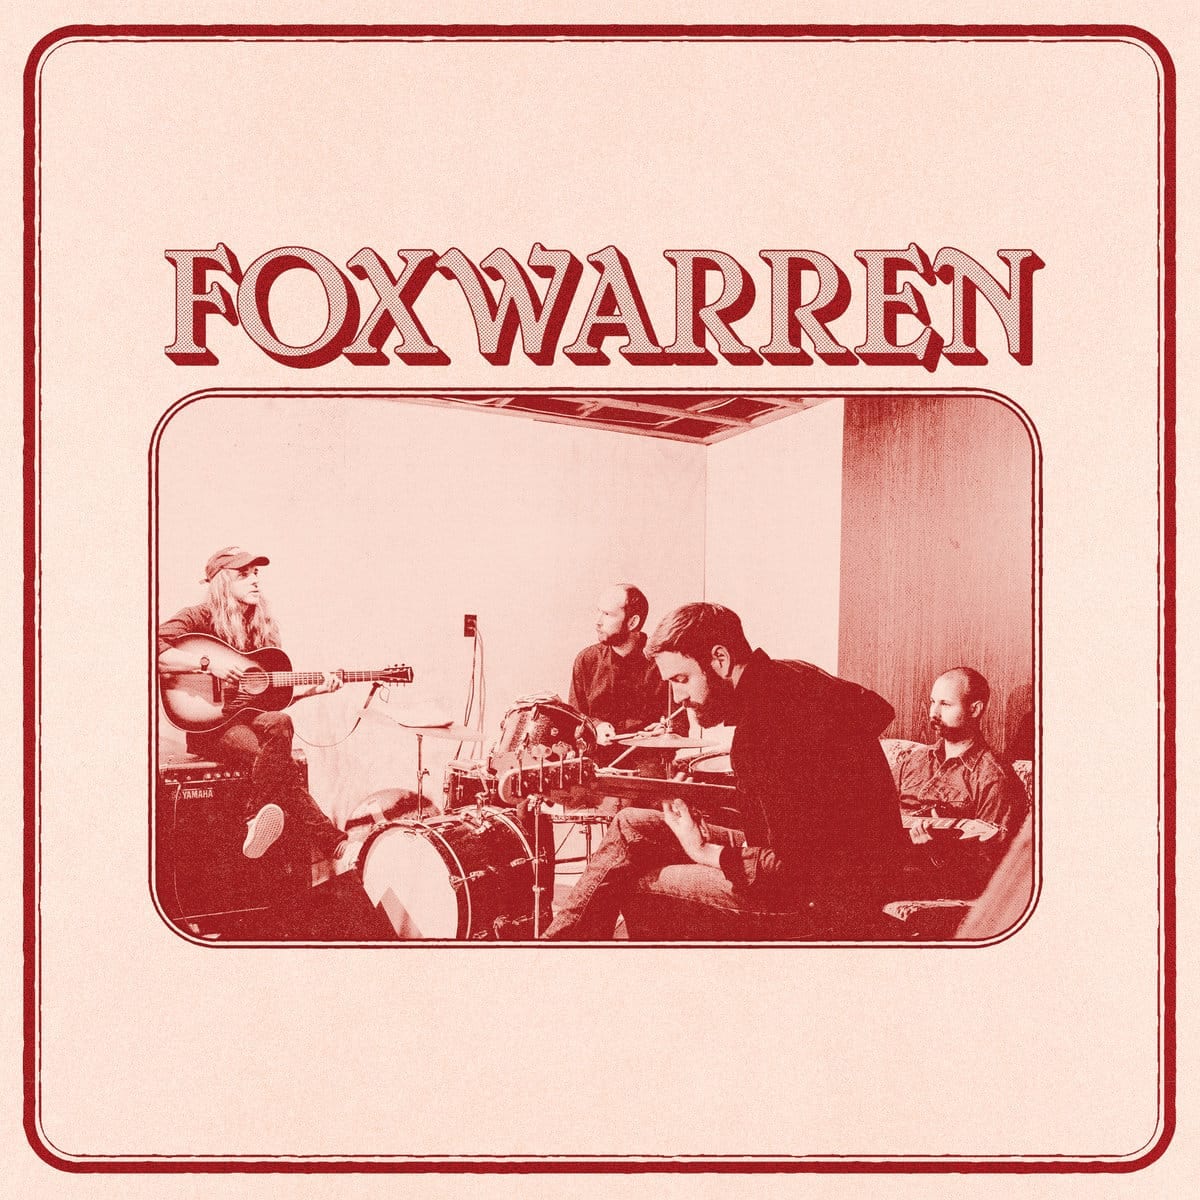 Foxwarren